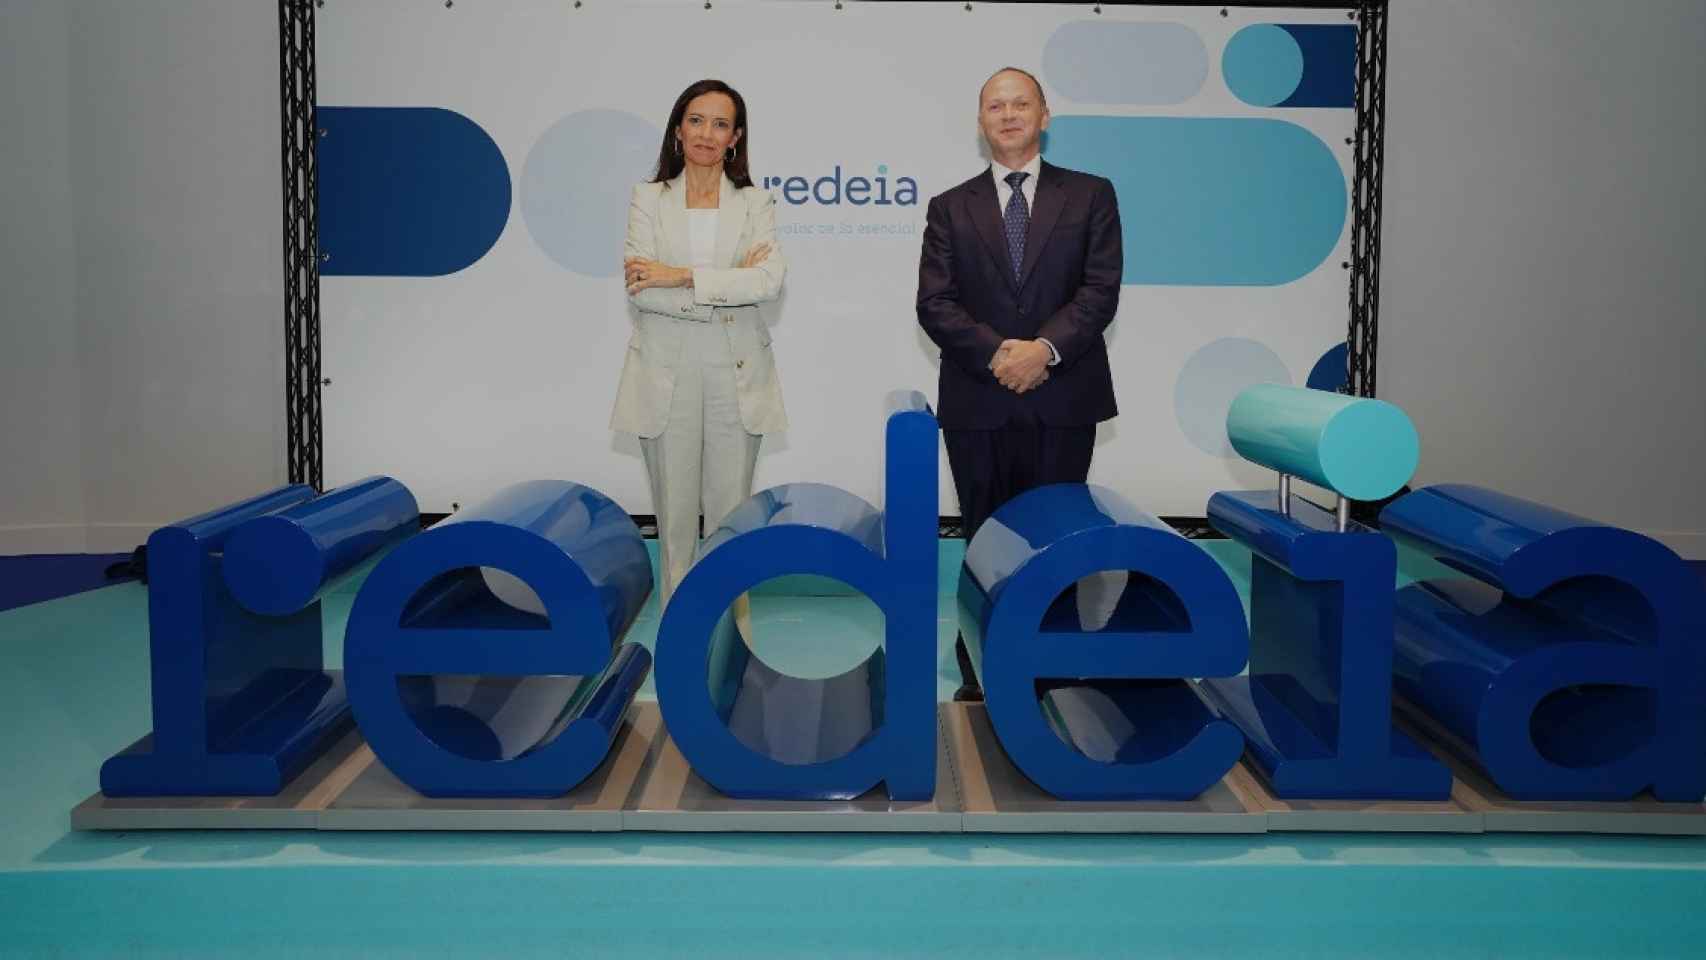 Beatriz Corredor y Roberto G. Merino presentan Redeia, el nuevo nombre de Red Eléctrica / EP